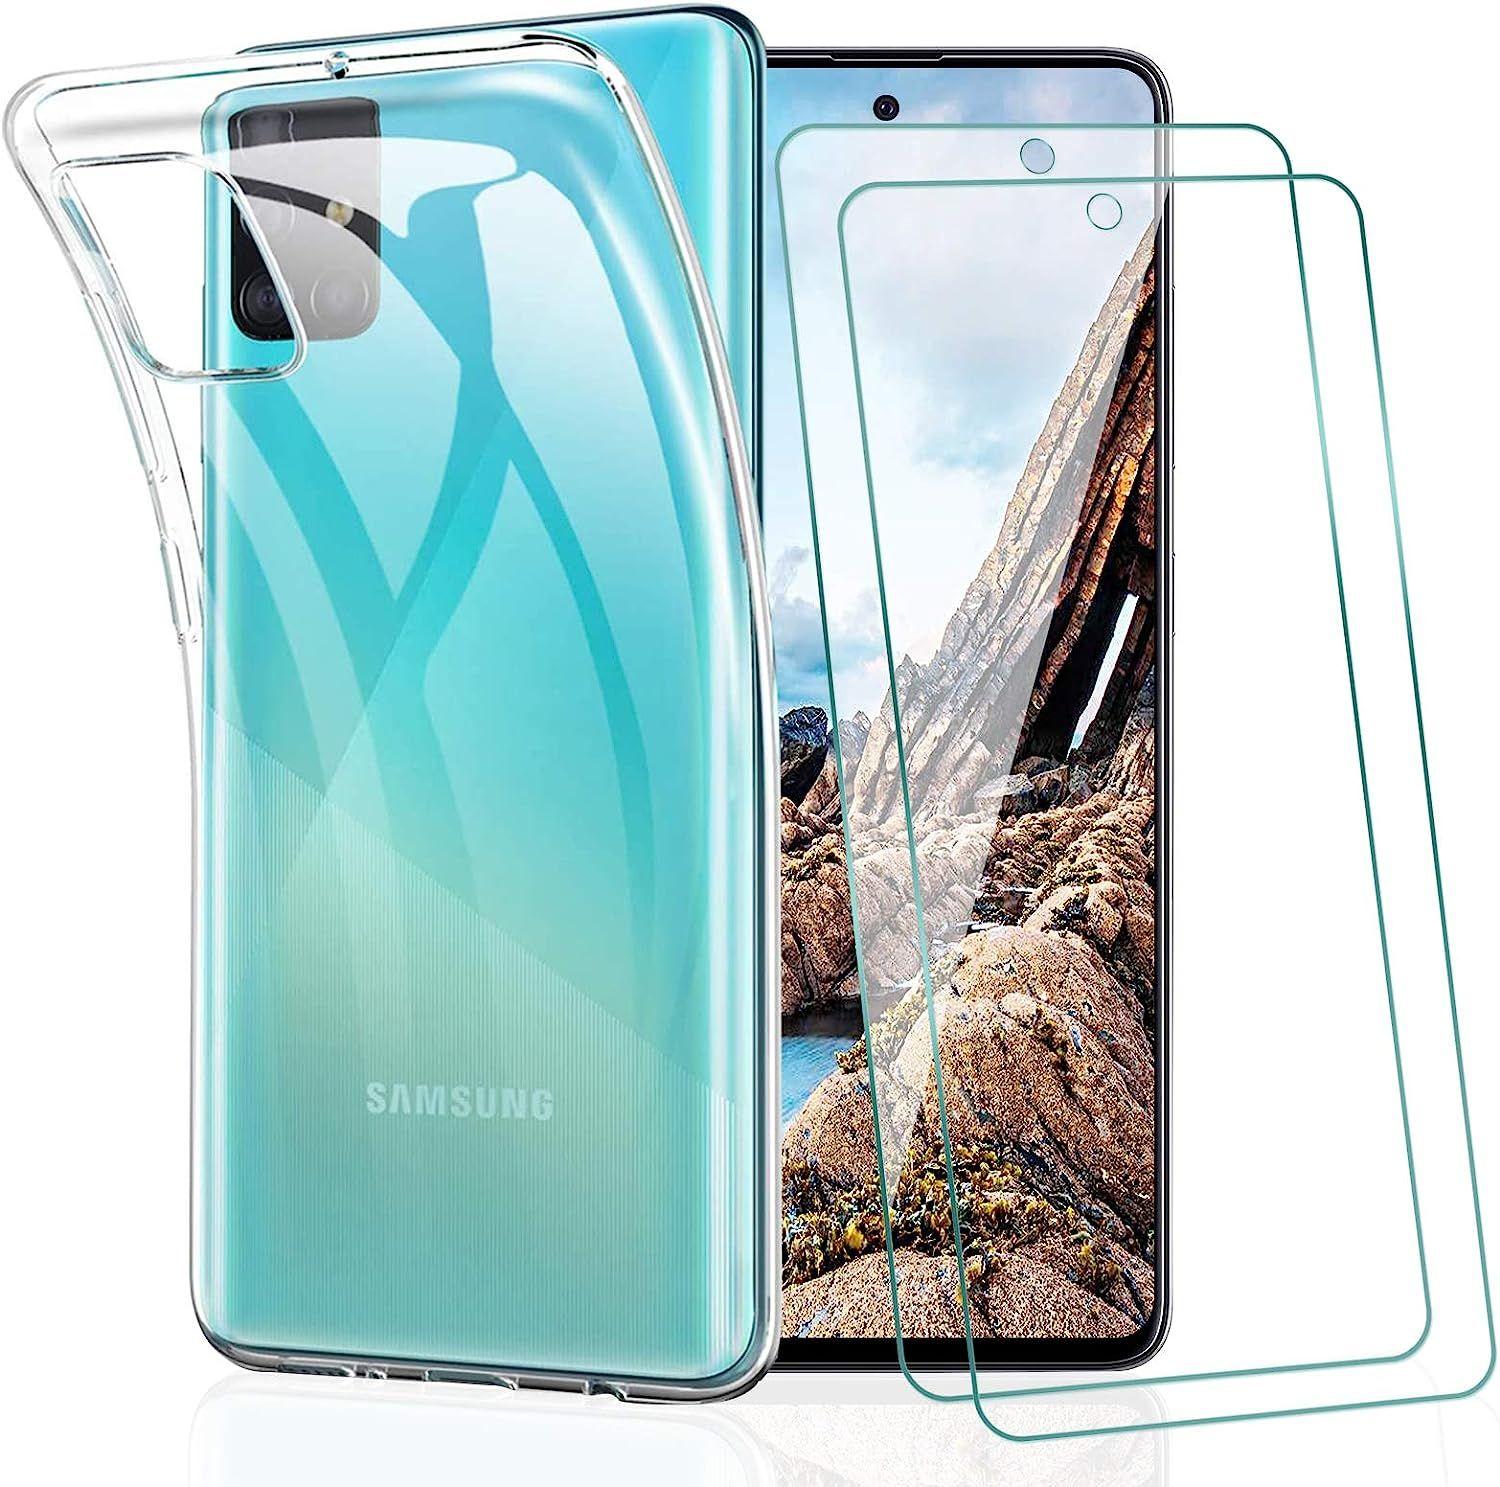 Protection en Verre Trempé pour Écran Samsung Galaxy A51 / A51 5G